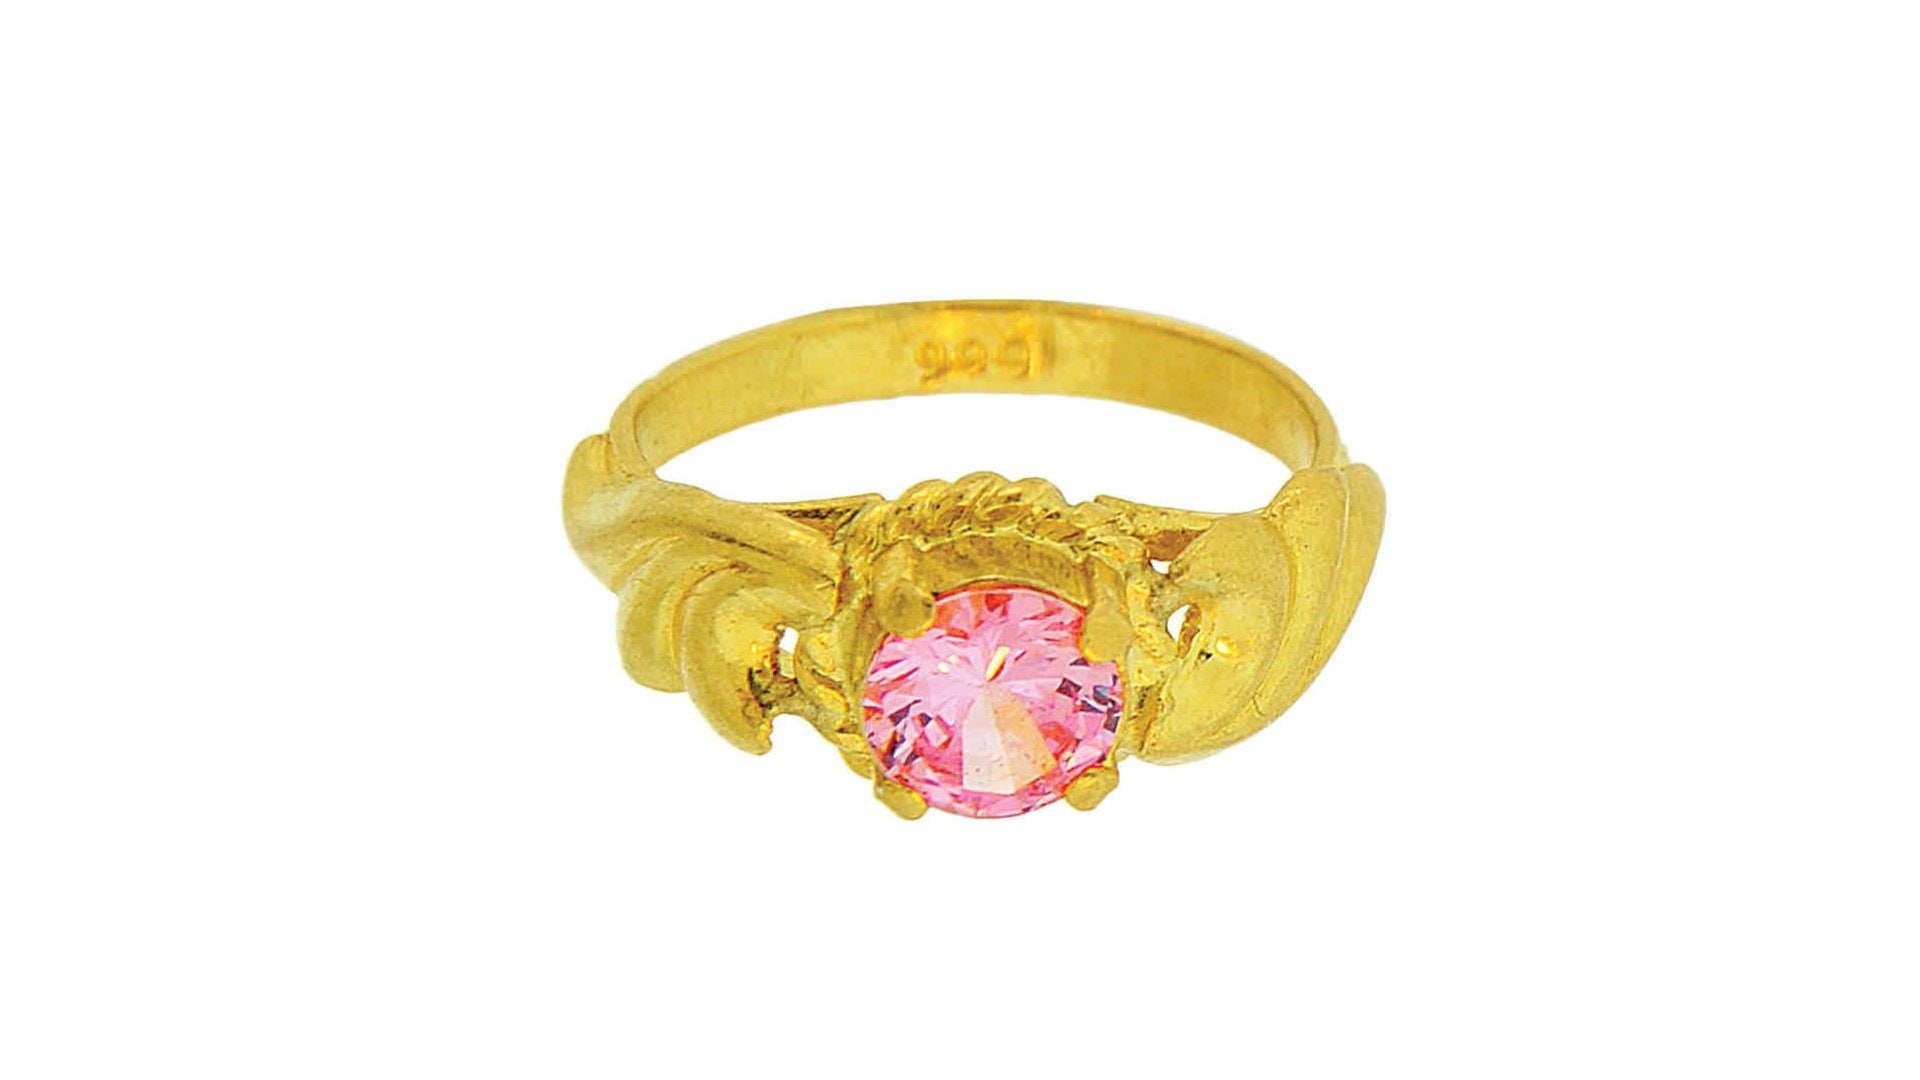 24K Gold Handmade Pink Cubic Zircon Ring - Queens Diamond & Jewelry